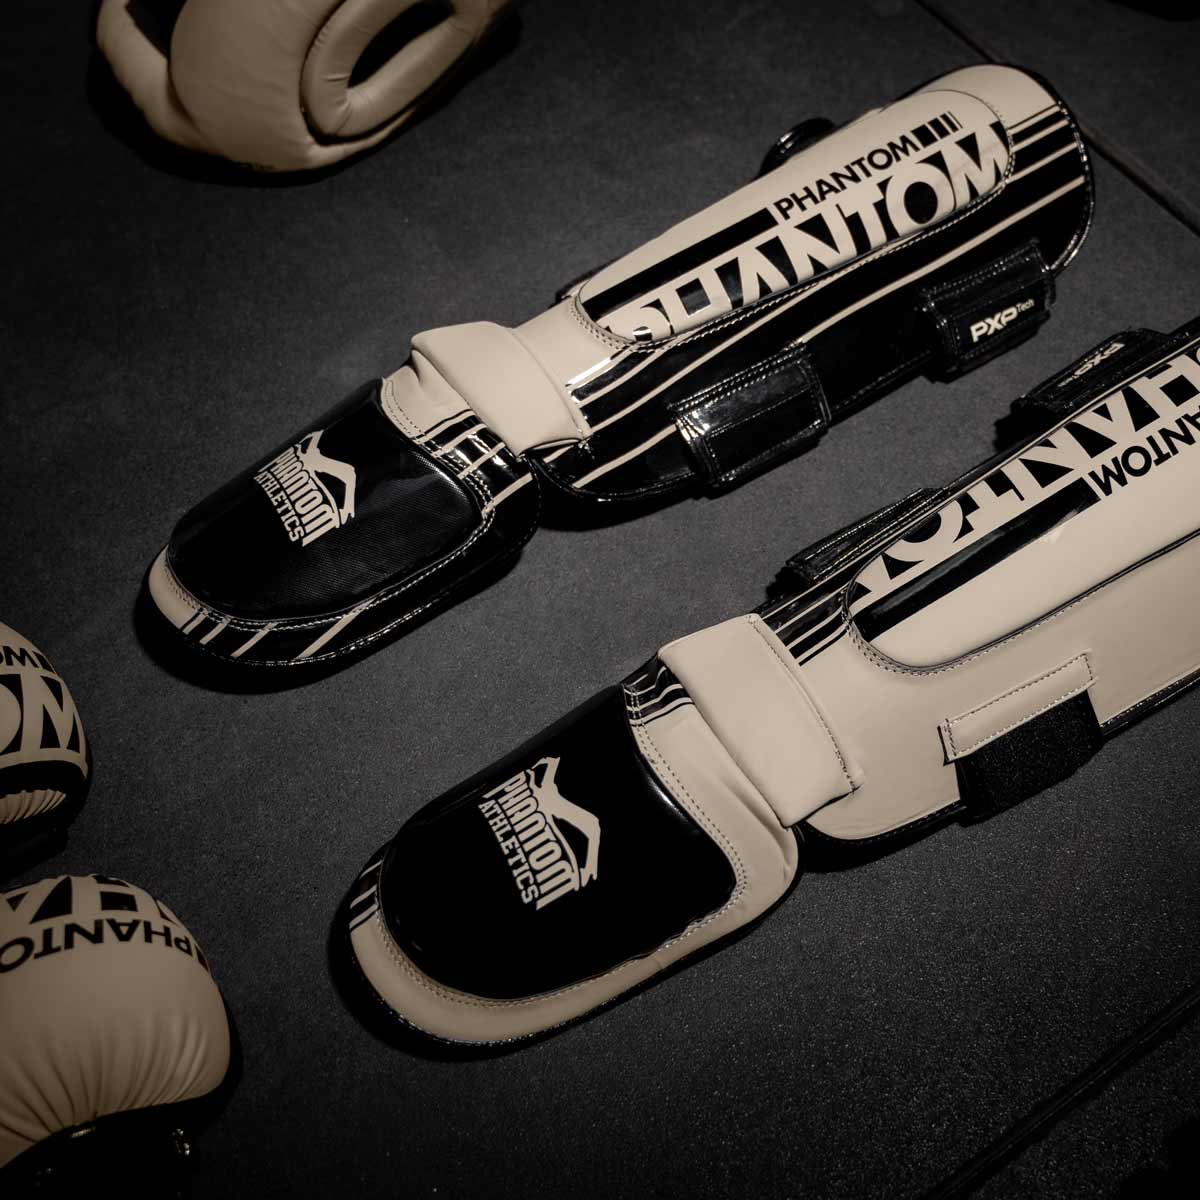 Die sandfarbenen Phantom Apex Hybrid Schienbeinschoner am Gymboden neben dem Kopfschutz und MMA Handschuhen.